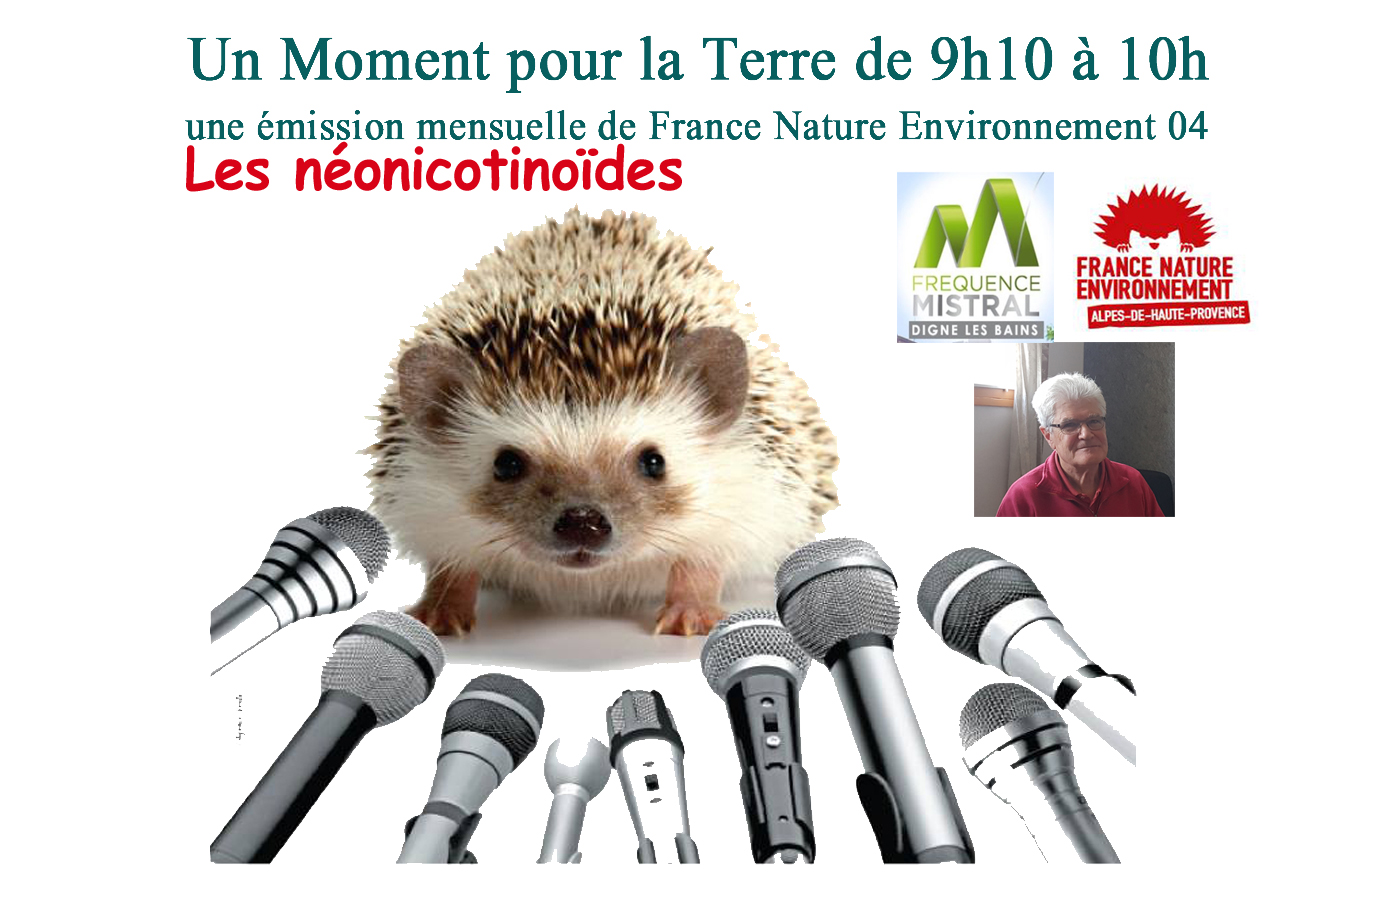 Un moment pour la terre avec France Nature Environnement - Les néonicotinoïdes